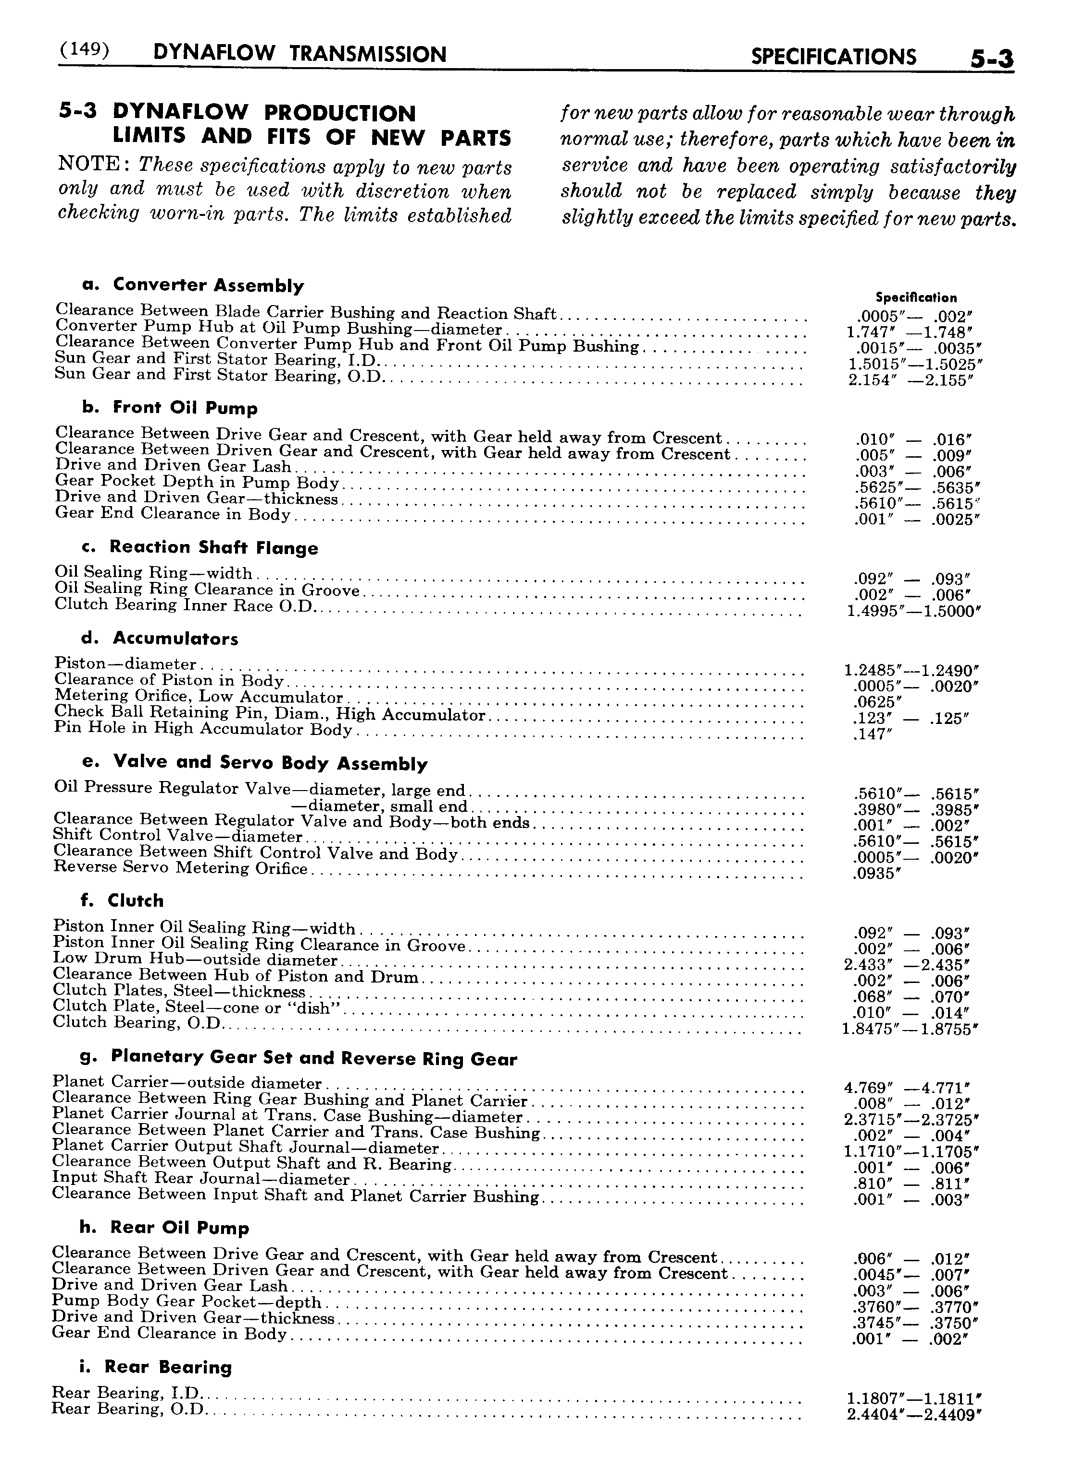 n_06 1956 Buick Shop Manual - Dynaflow-003-003.jpg